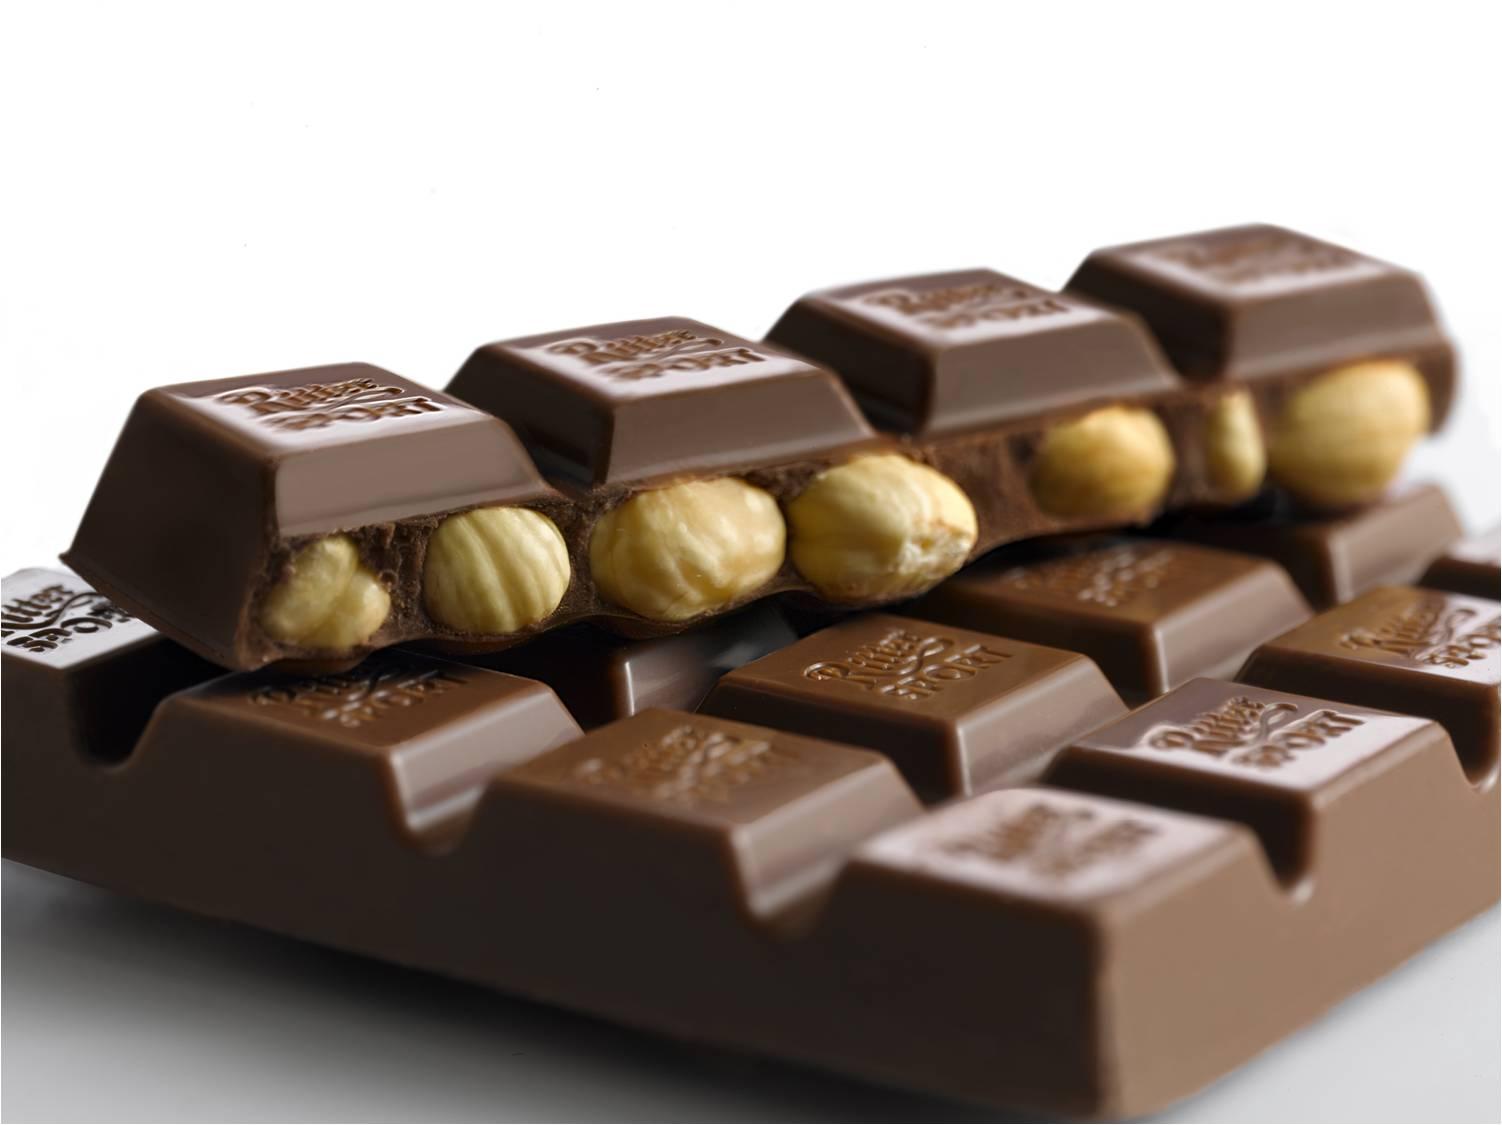 去瑞士 寻找世界上最好吃的巧克力_手机凤凰网